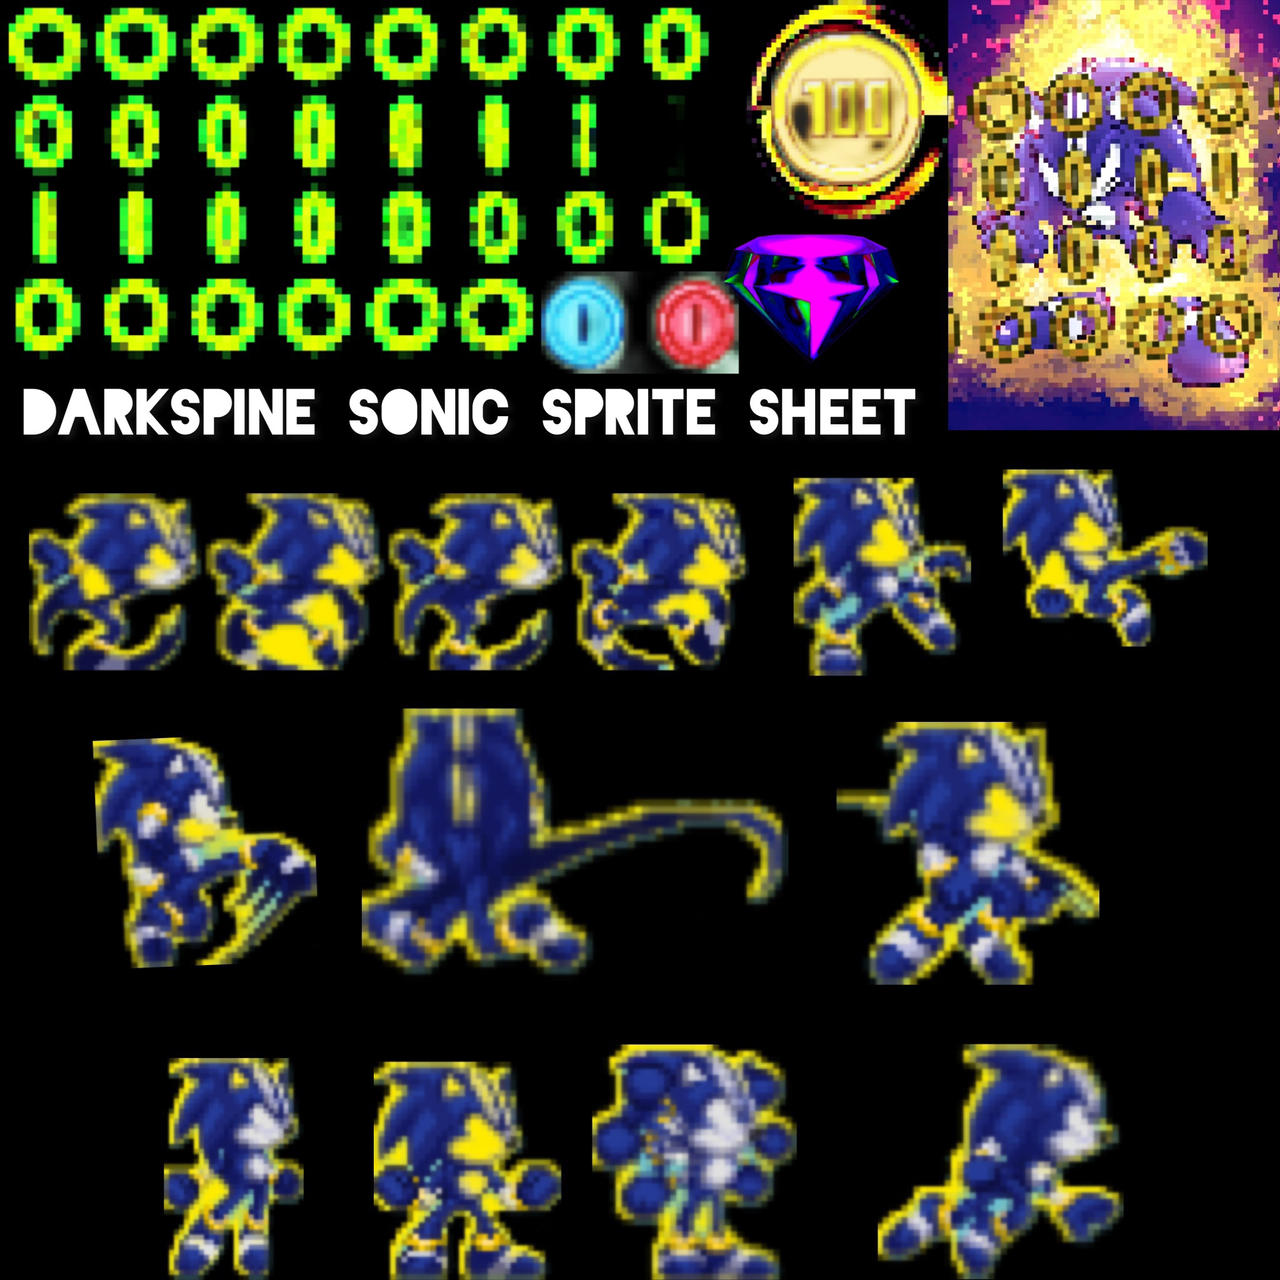 Dark Spine Sonic sprite sheet by razorthecurse on DeviantArt